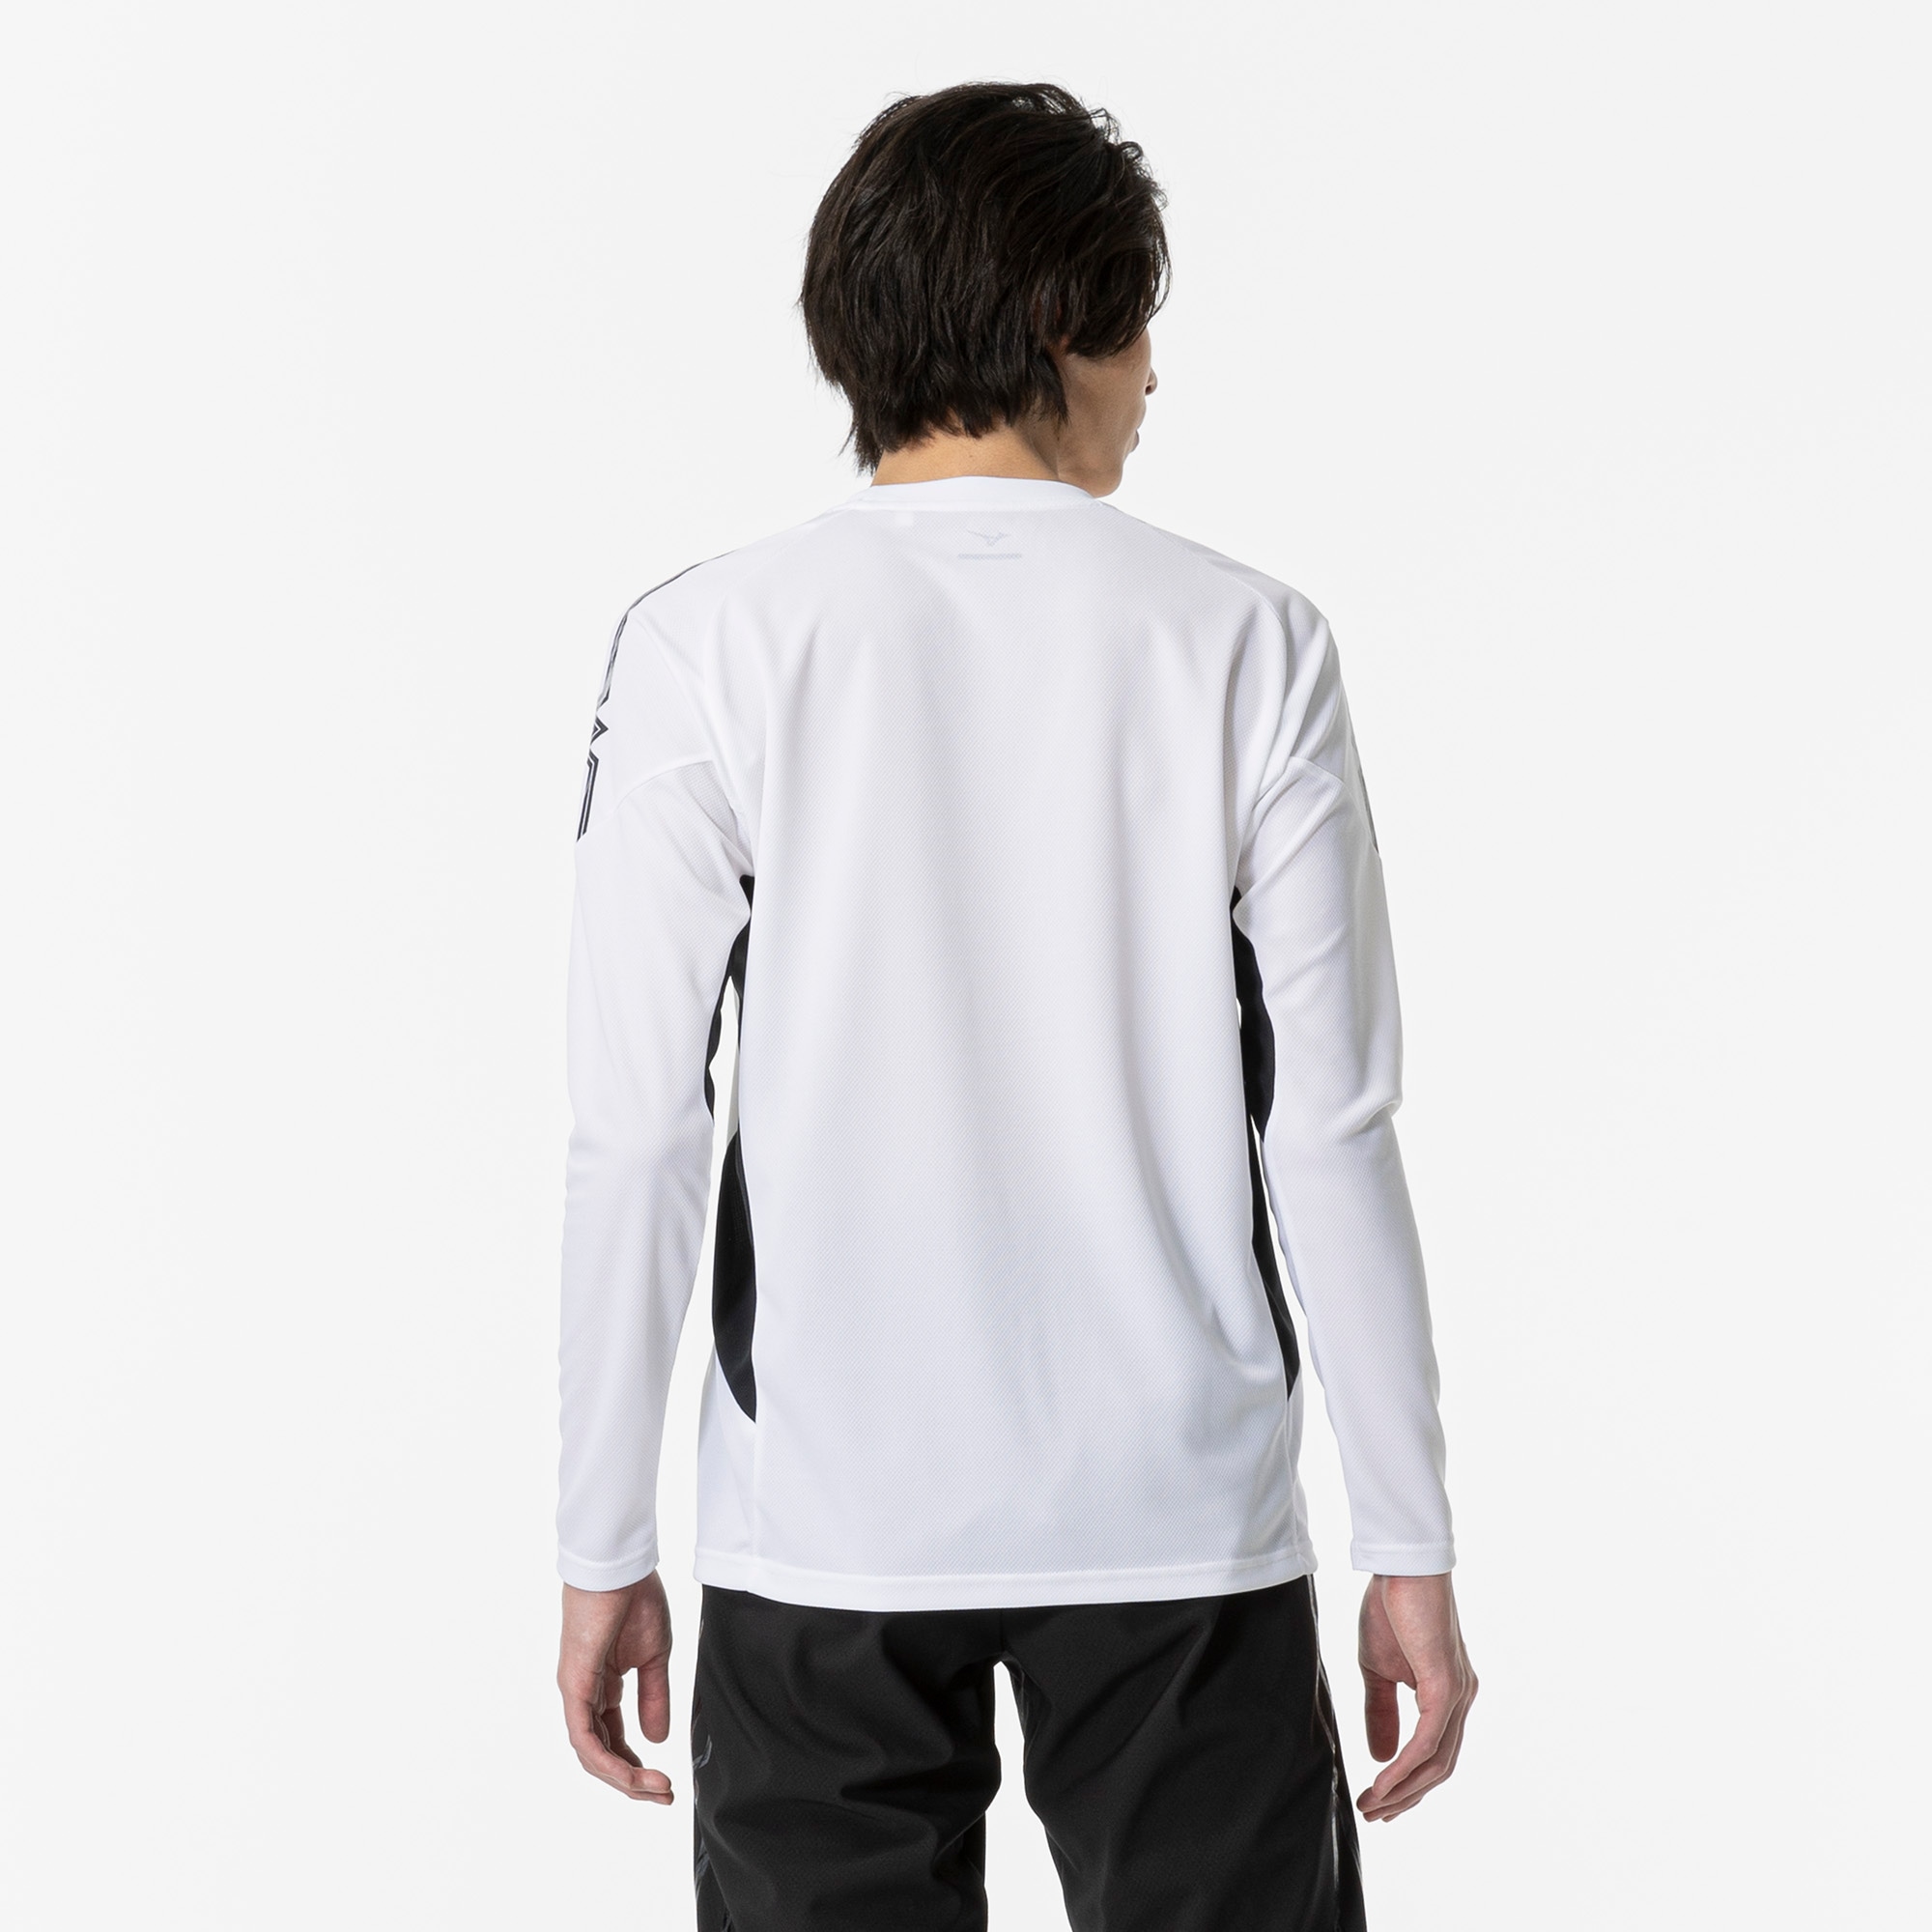 MCライン Tシャツ（長袖）[ユニセックス]|32MAA630|ミズノトレーニング 